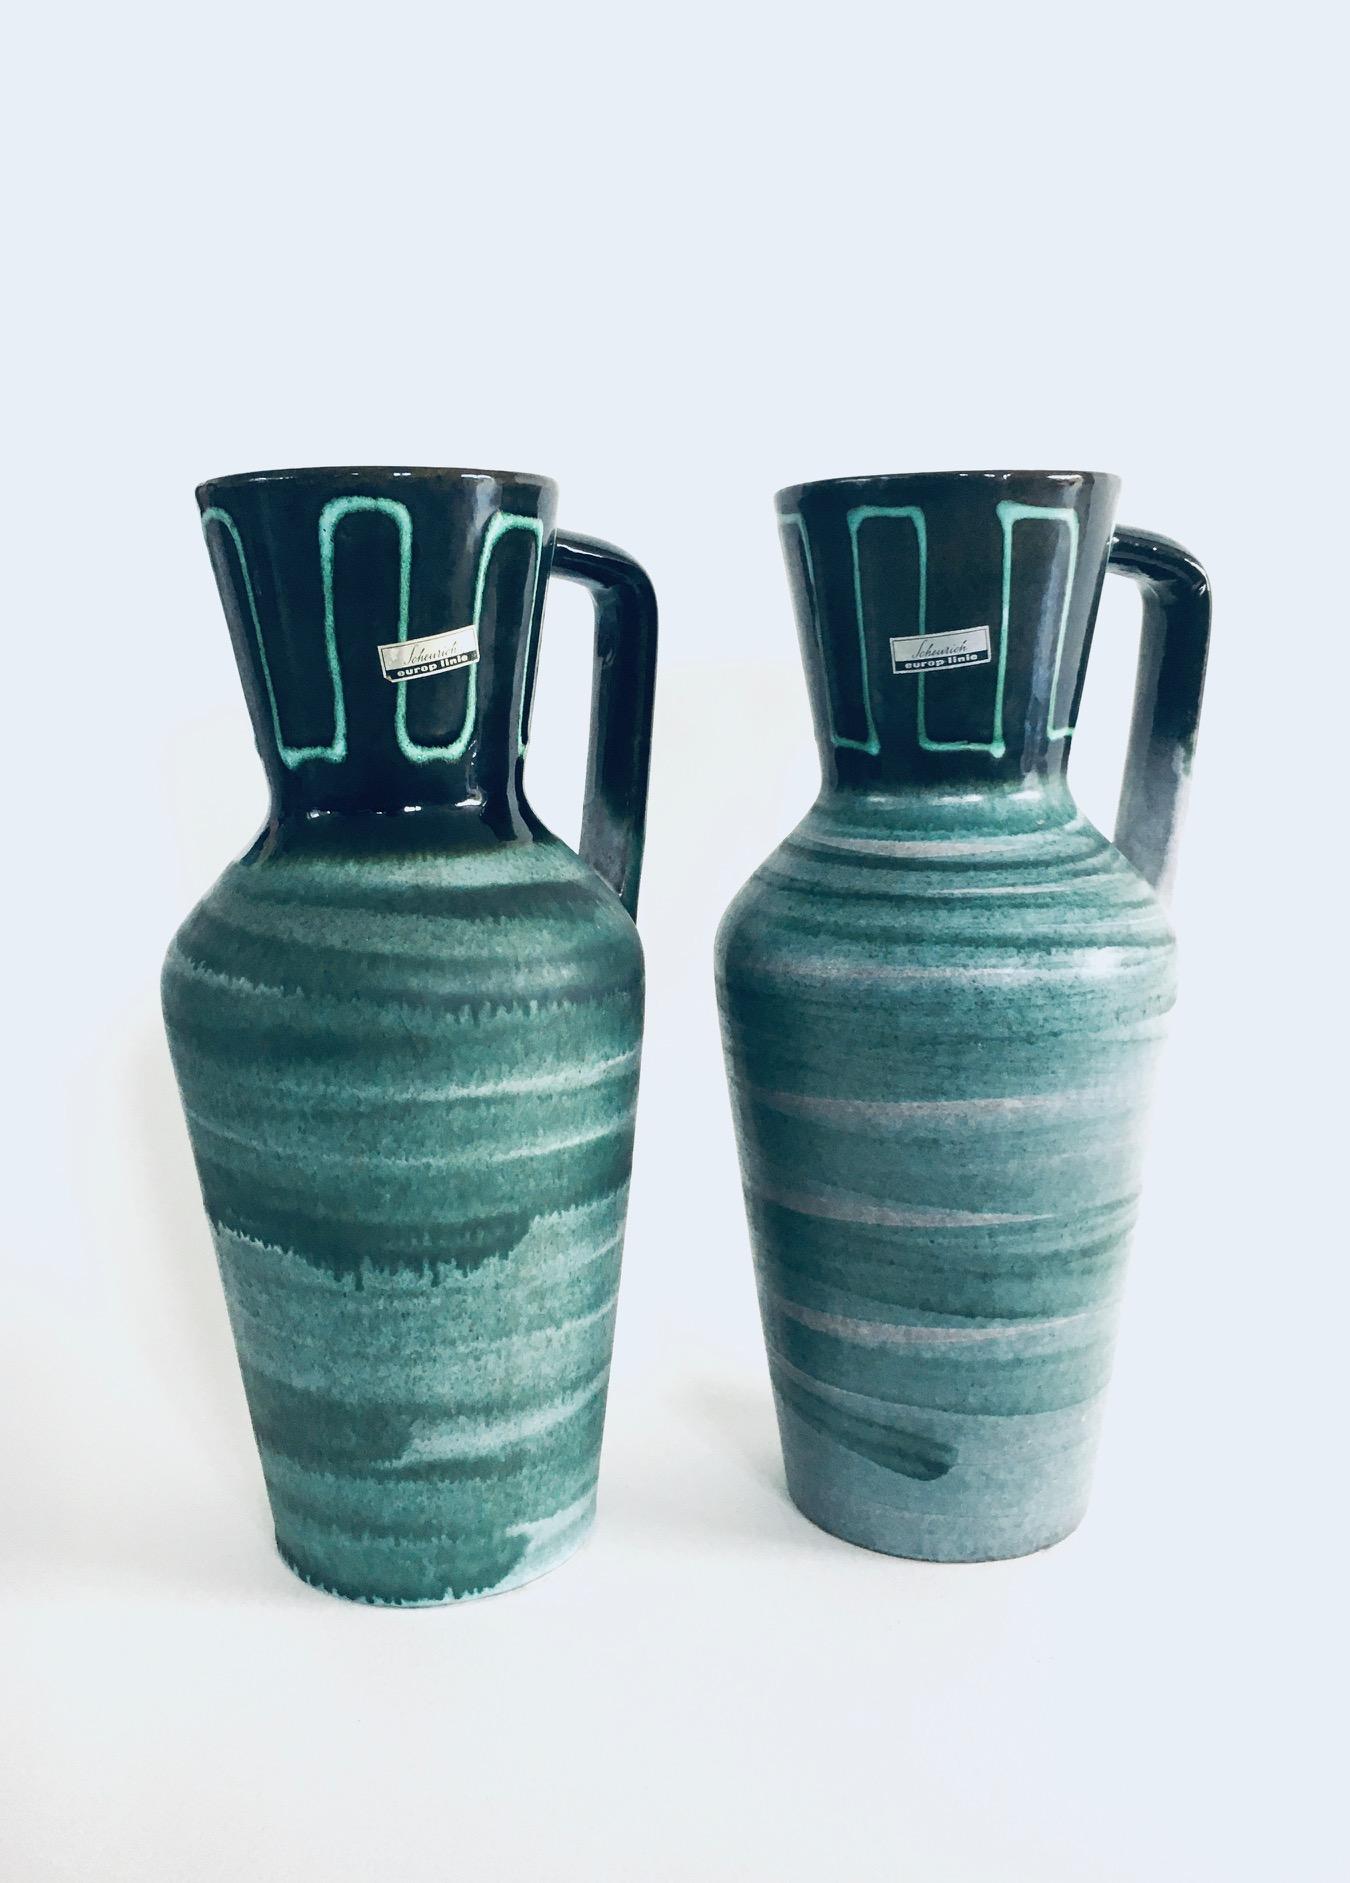 Vintage Midcentury Modern Art Studio Pottery Jug Vase set by Scheurich Europ Linie, West Germany 1960's. Modèle 407-35. Pot vernissé vert foncé à clair. En très bon état. Chaque vase mesure 18 cm x 15 cm x 35 cm. 
Vendu en lot de 2